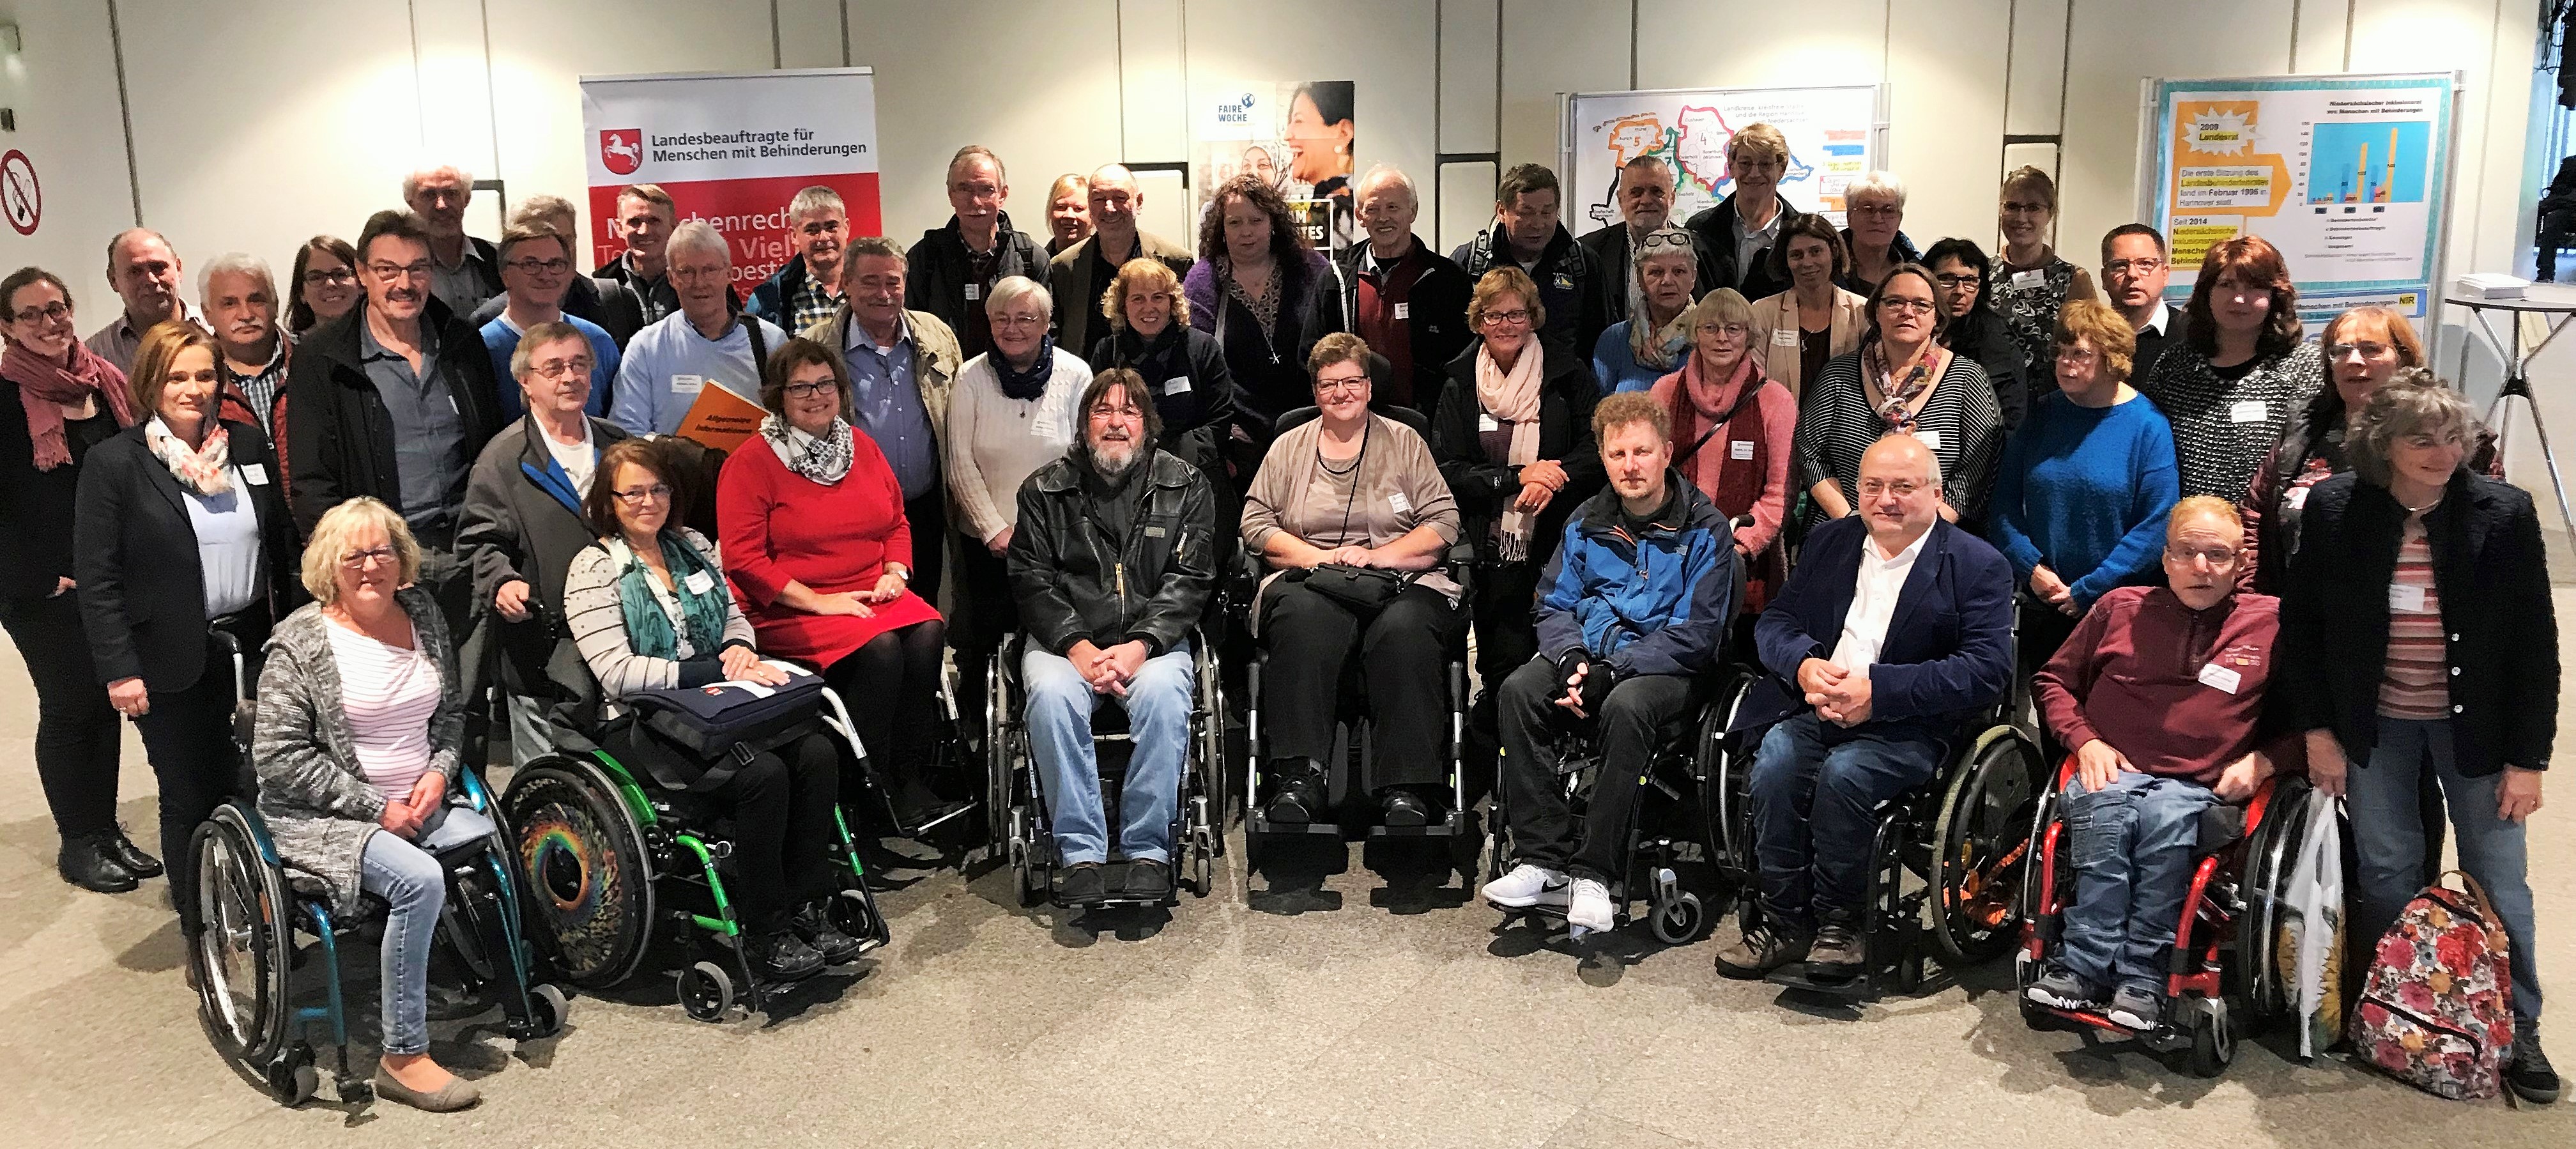 Ein Gruppenbild der kommunalen Behindertenbeauftragten sowie den ersten Vorsitzenden der kommunalen Behindertenbeiräte aus ganz Niedersachsen sowie Referentinnen und Referenten mit der Landesbeauftragten Petra Wontorra